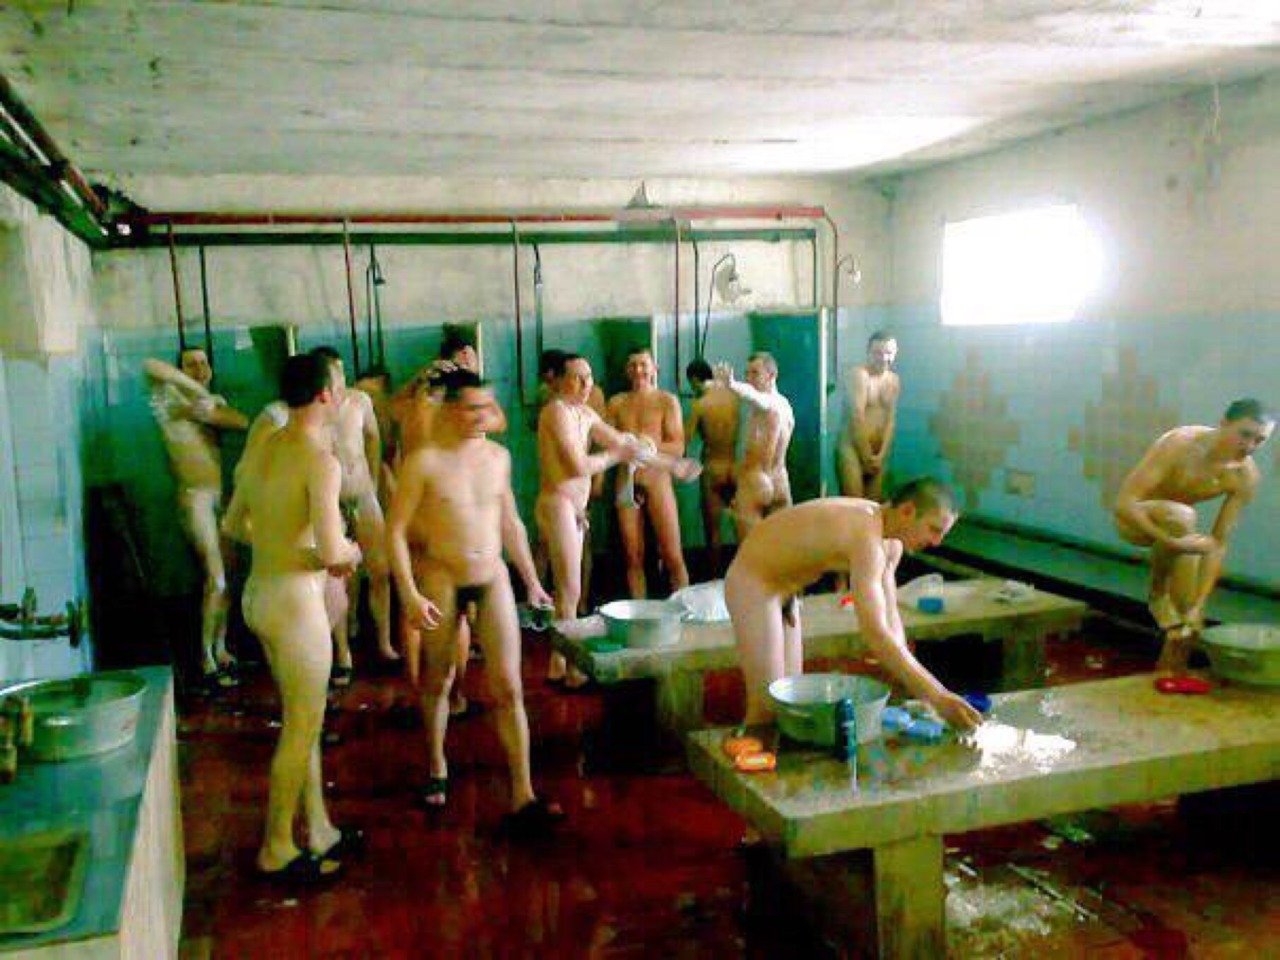 Мужики со стоячими хуями в мужской бане - фото секс и порно helper163.ru